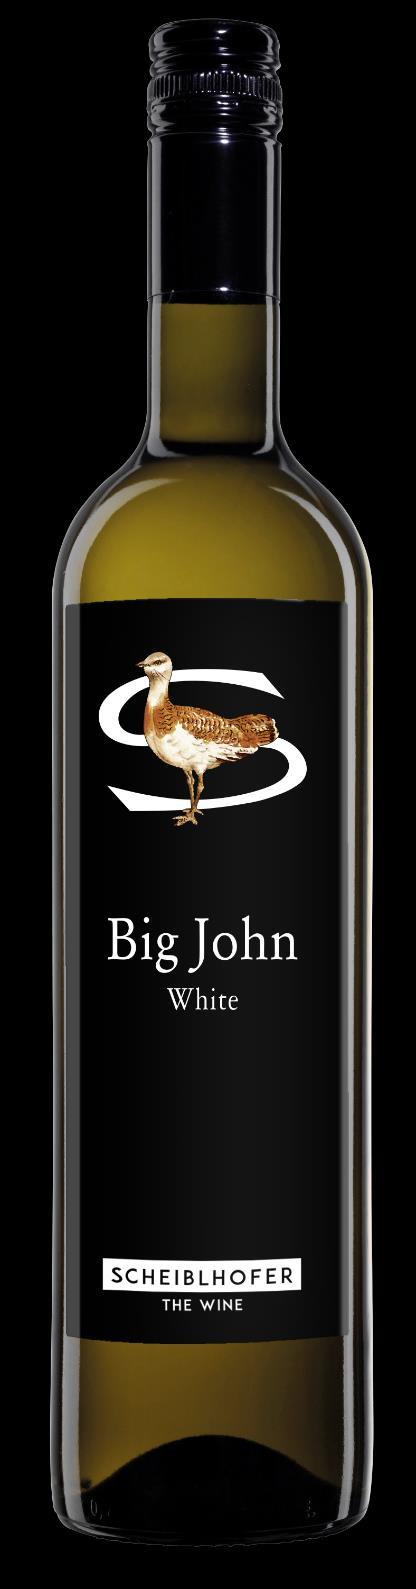 Big John White 2016 Name: Big John White 2016 Chardonnay, Sauvignon Blanc Österreichischer Qualitäts-Weißwein, Chardonnay-Anteil 6